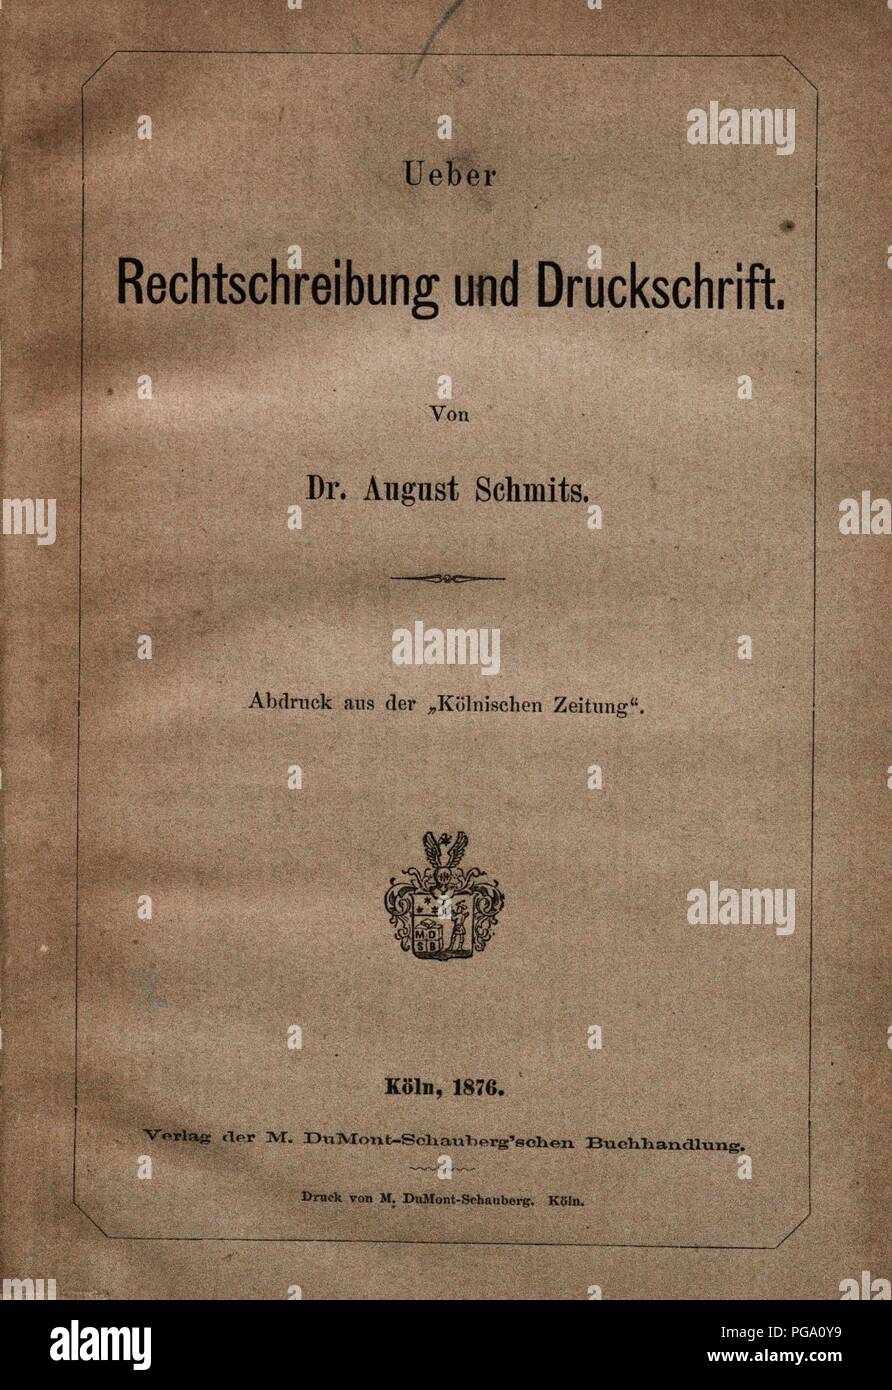 August Schmits - Rechtschreibung und Druckschrift - 1876. Stock Photo